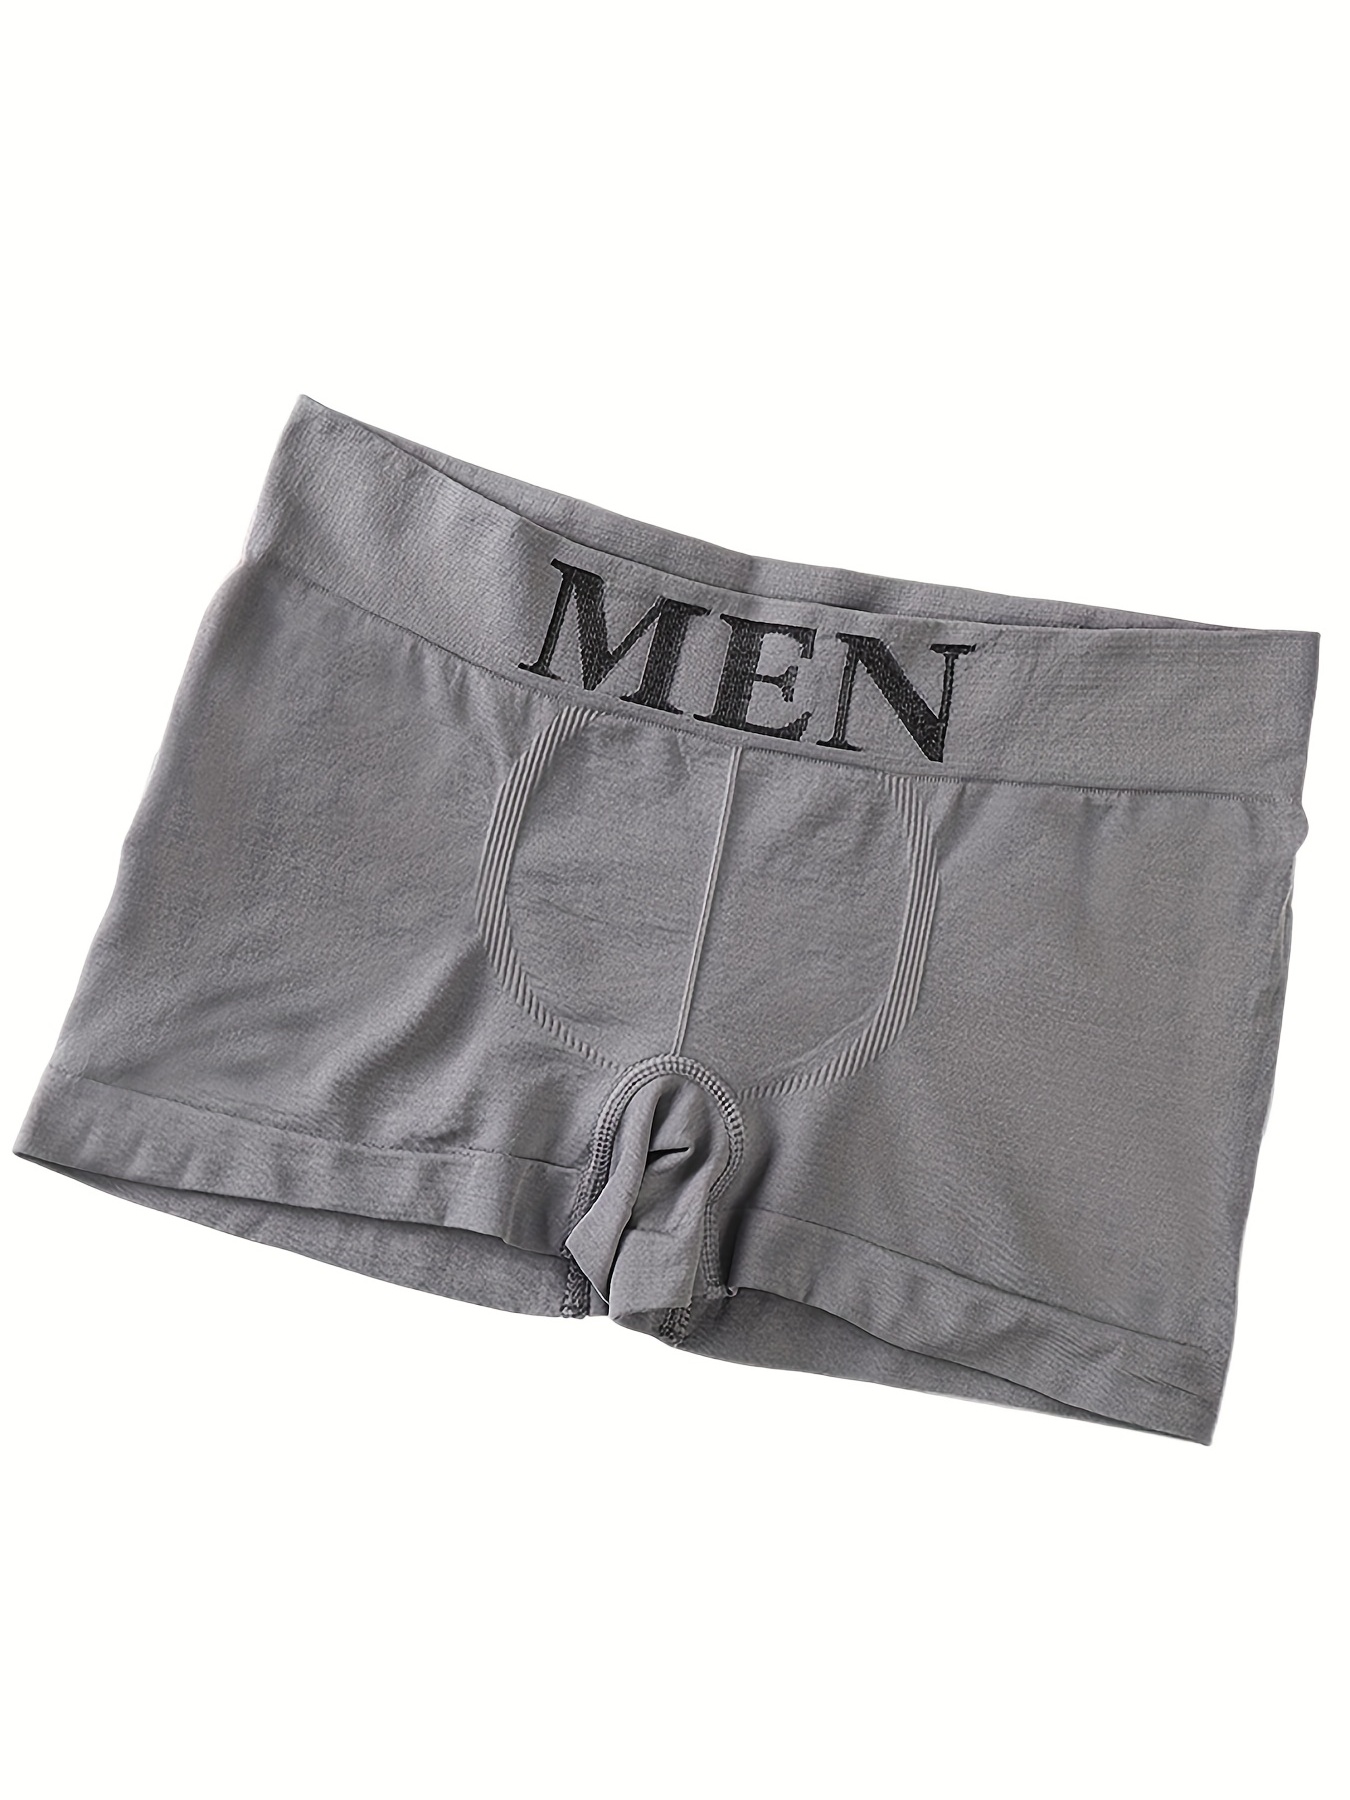 Briefs in Lycra, comfortable fit, Seamless, grey, Men's Underwear